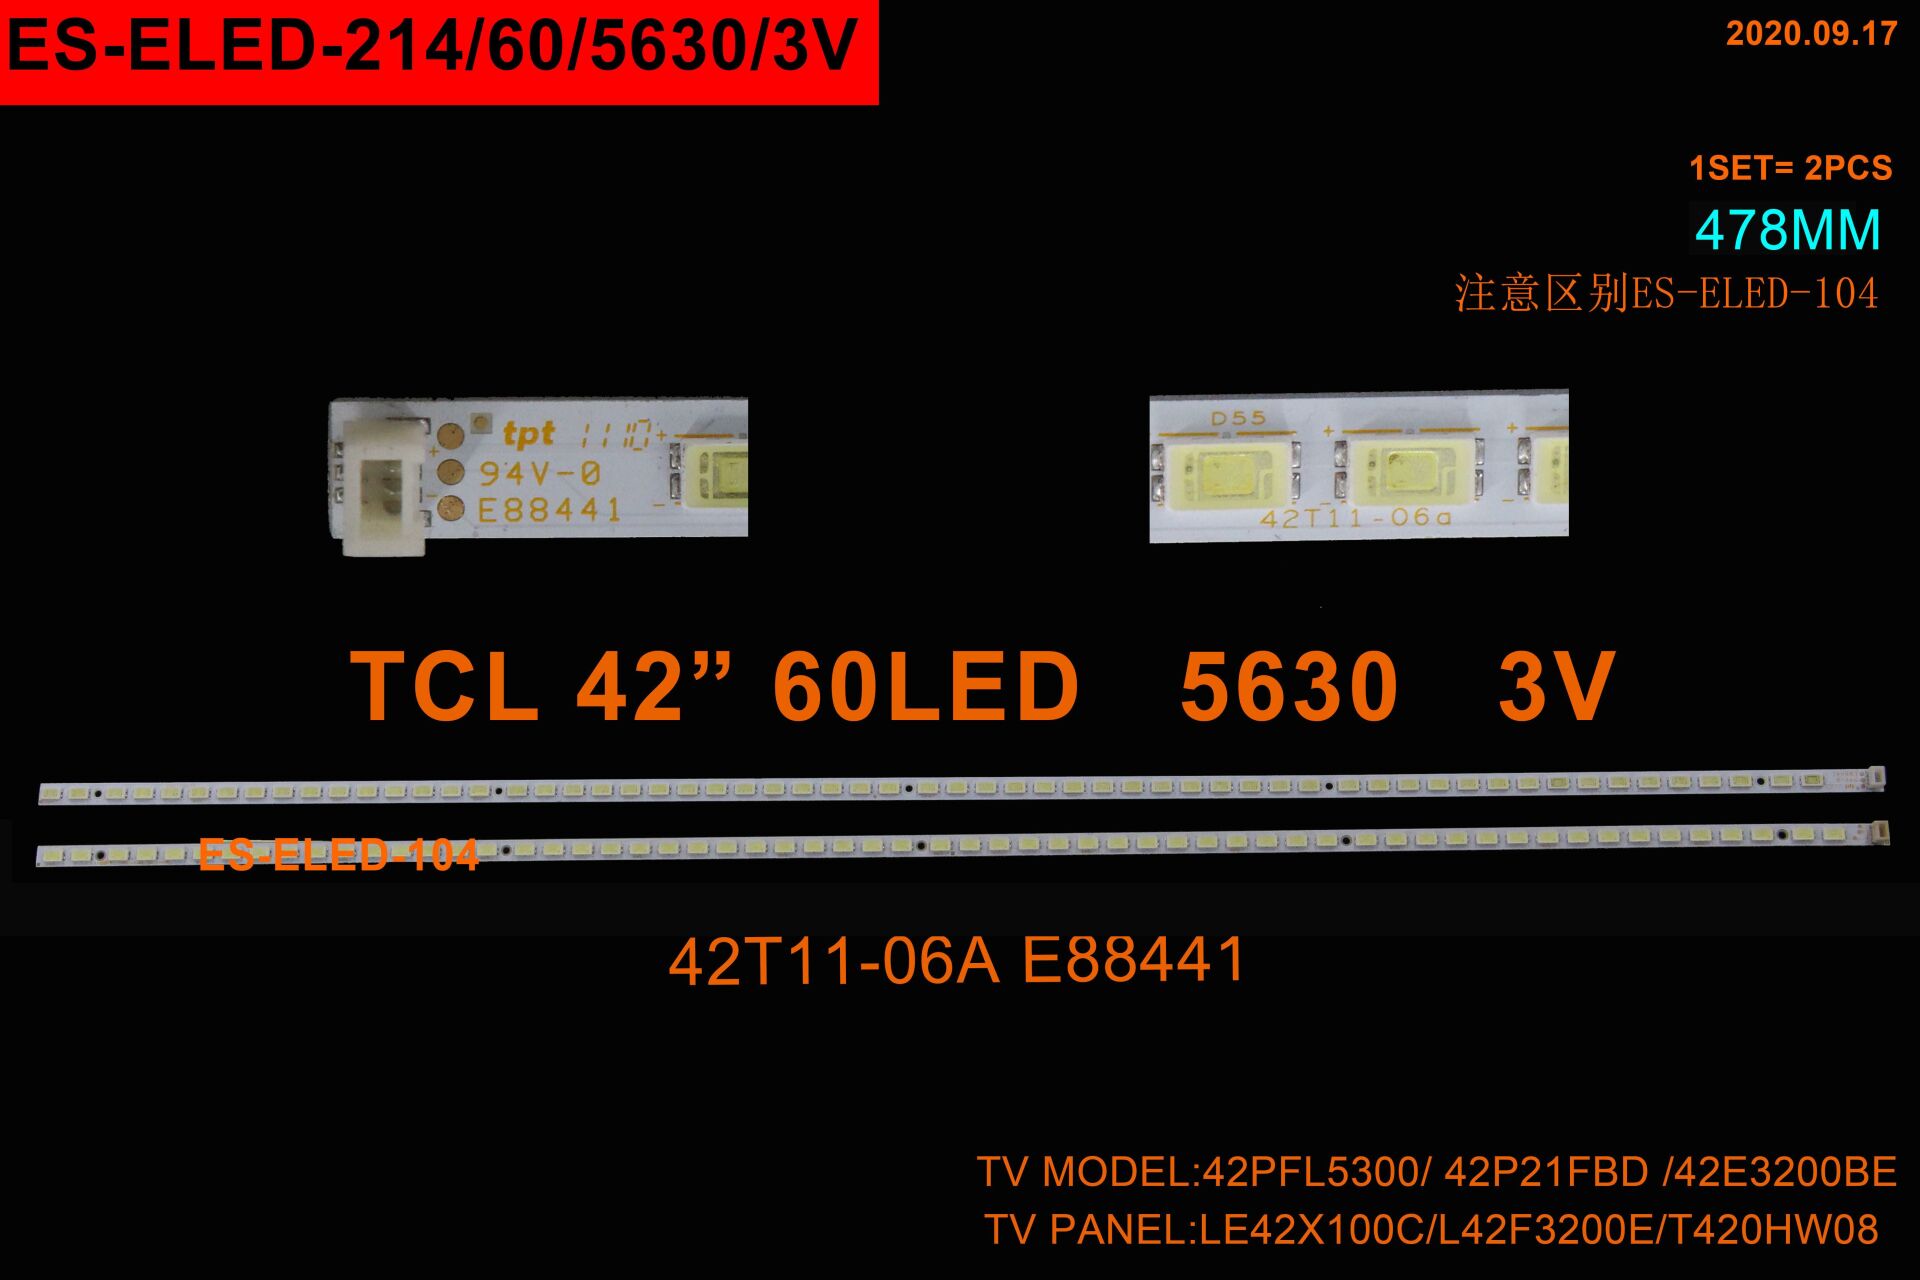 LCD LED-2268 2 Lİ ÇUBUK-42LV3550-42LV3400-42LV550-ELED214-WİNKEL